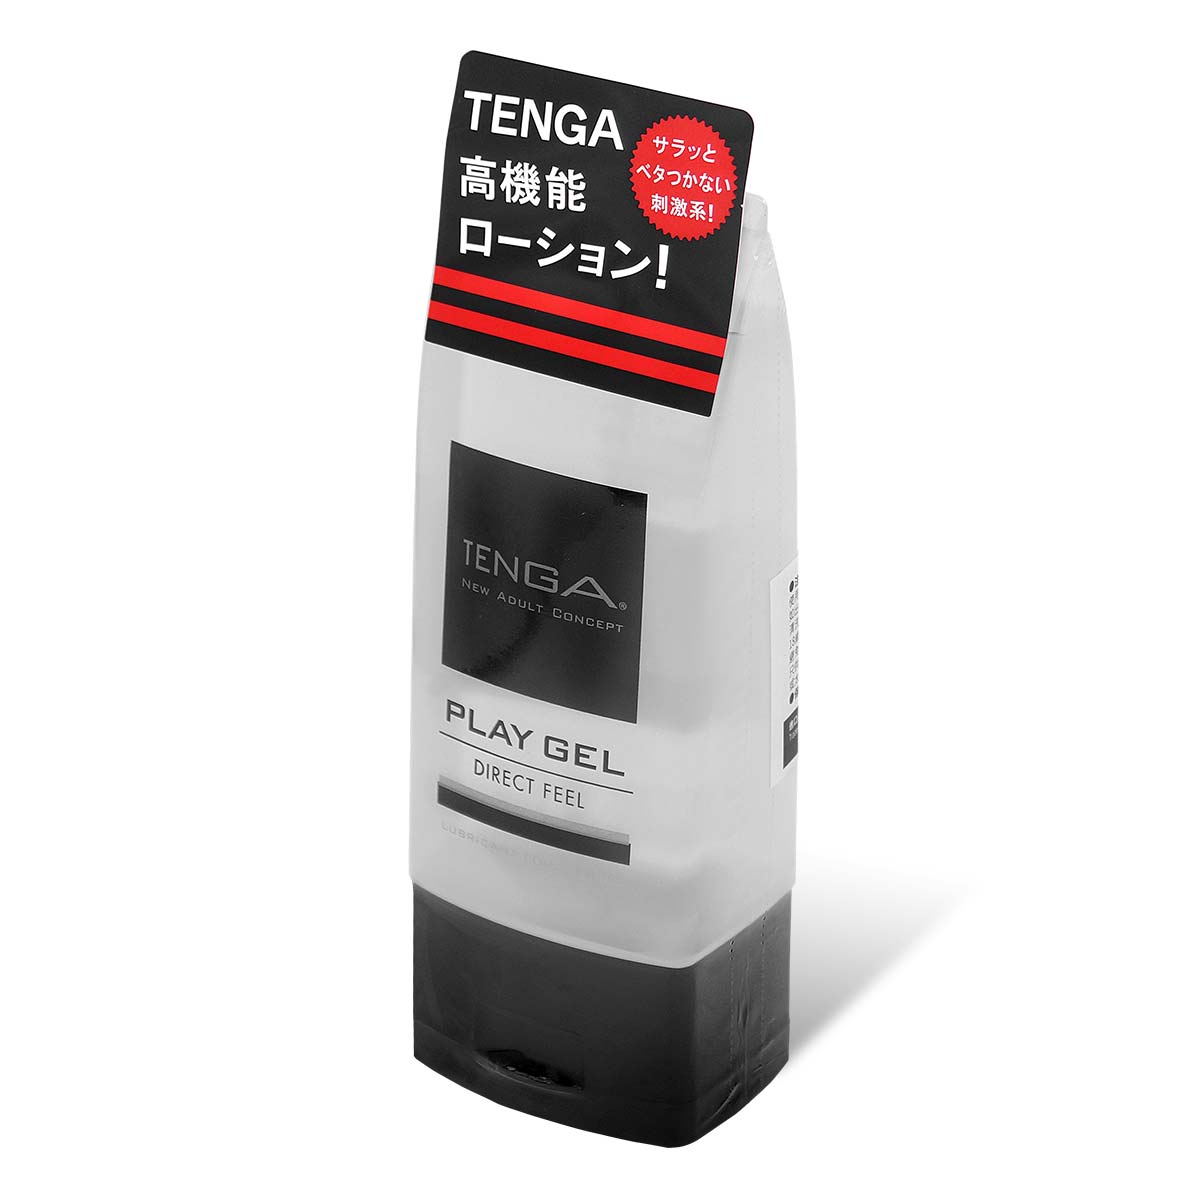 TENGA PLAY GEL DIRECT FEEL 水基润滑剂-thumb_1